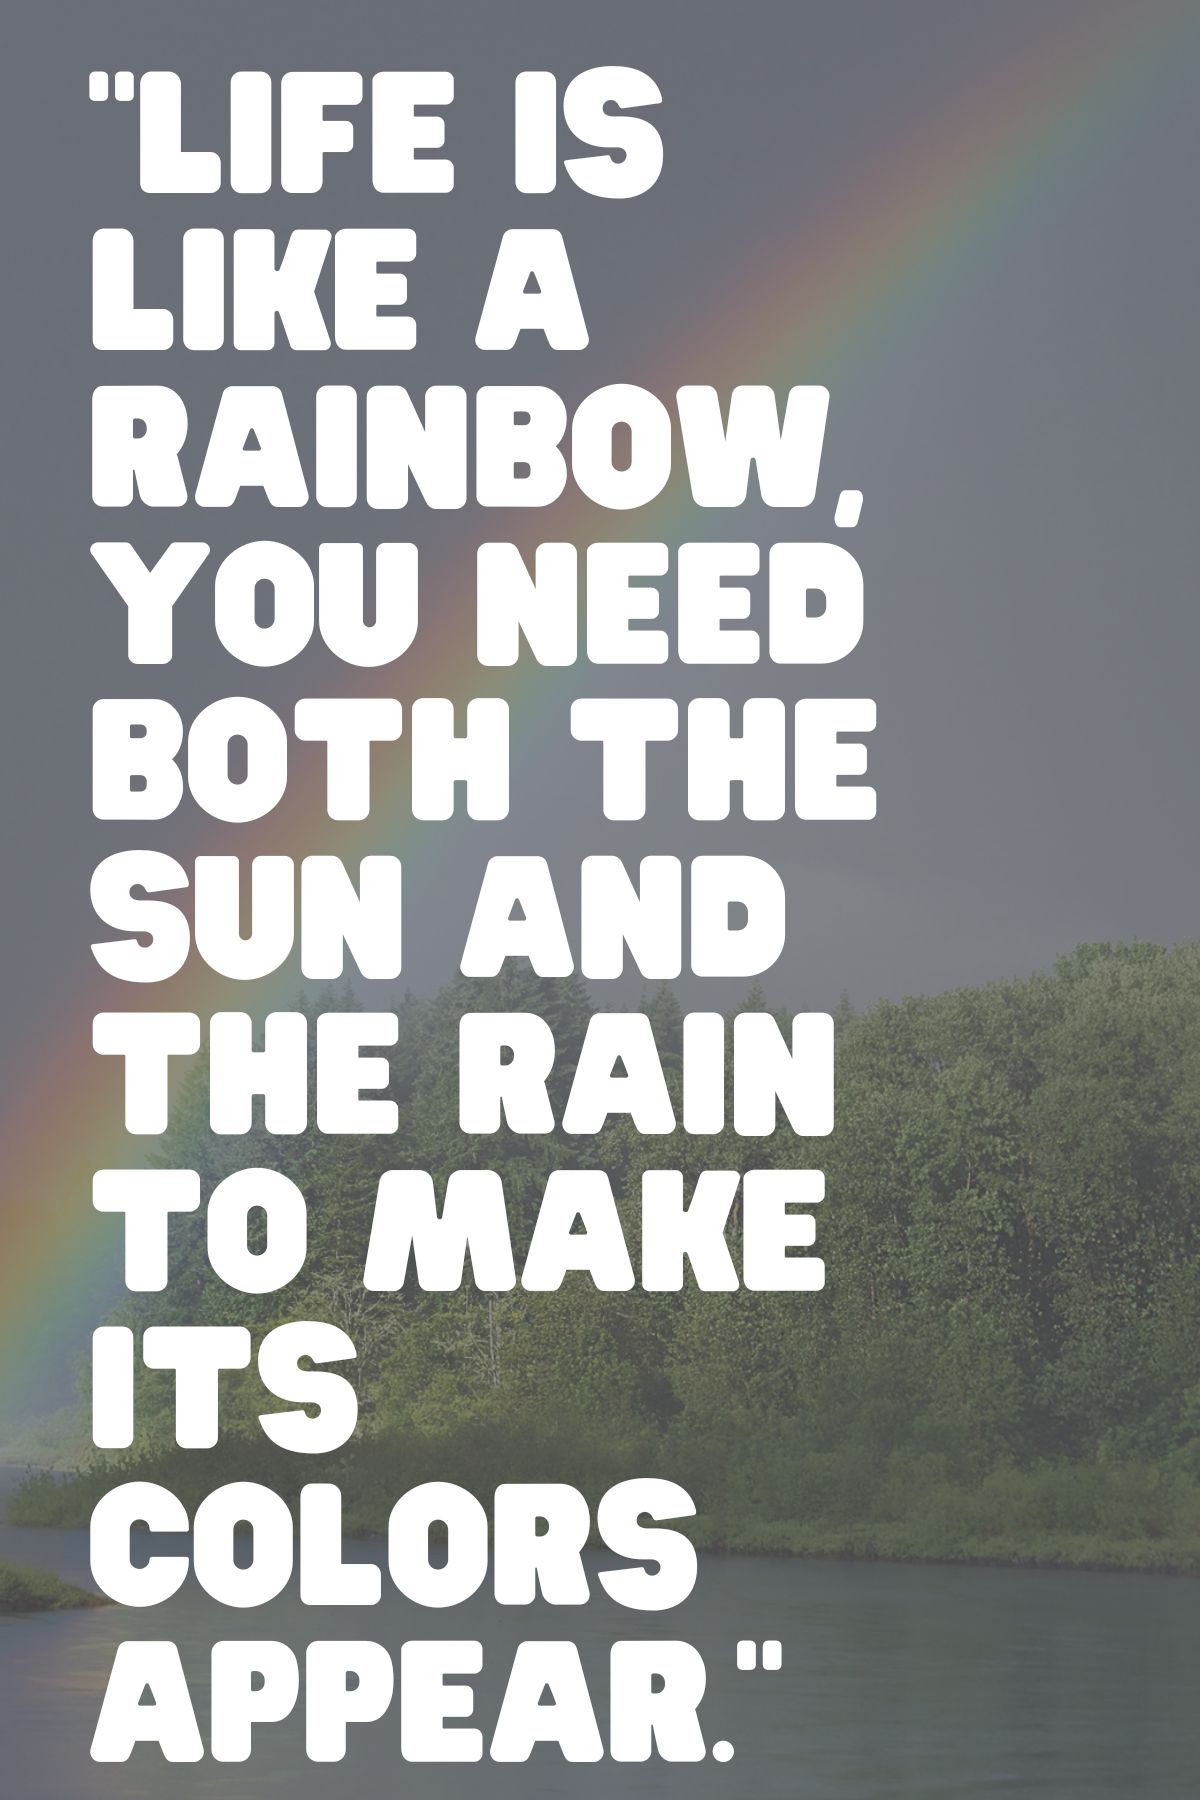 quote on rainbows